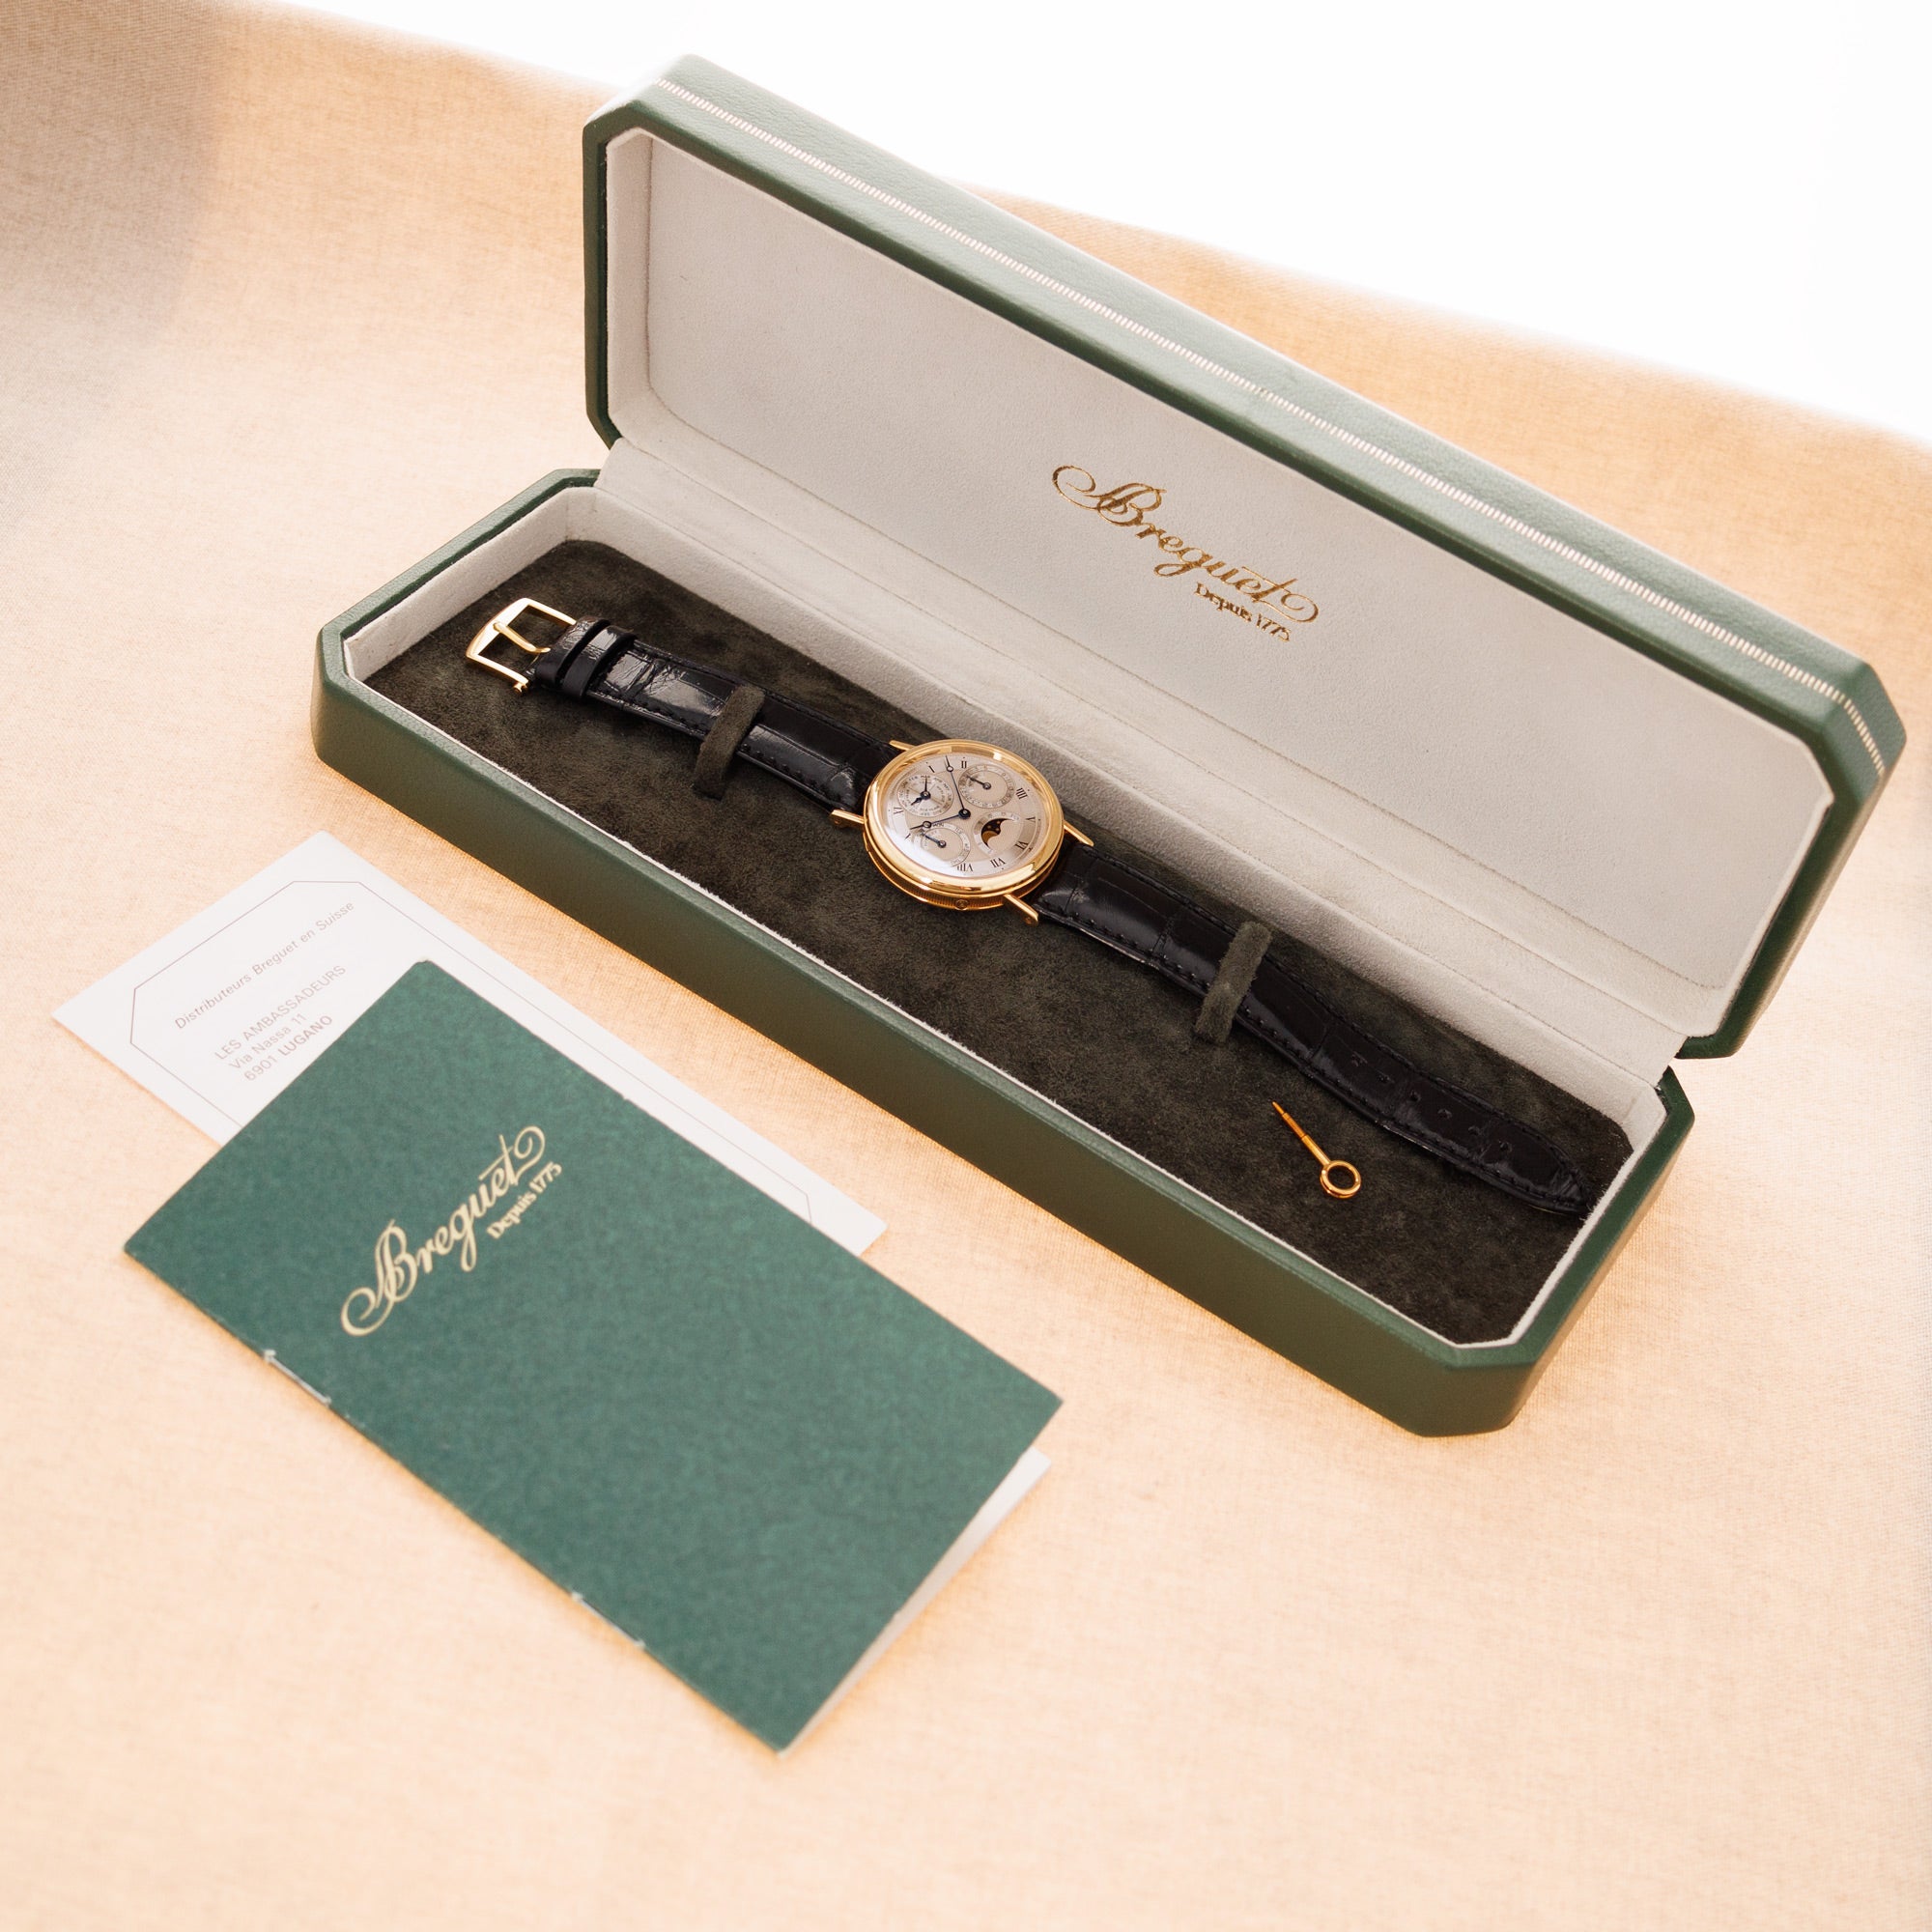 Breguet - Breguet Yellow Gold Classique Perpetual Calendar Ref. 3057 - The Keystone Watches